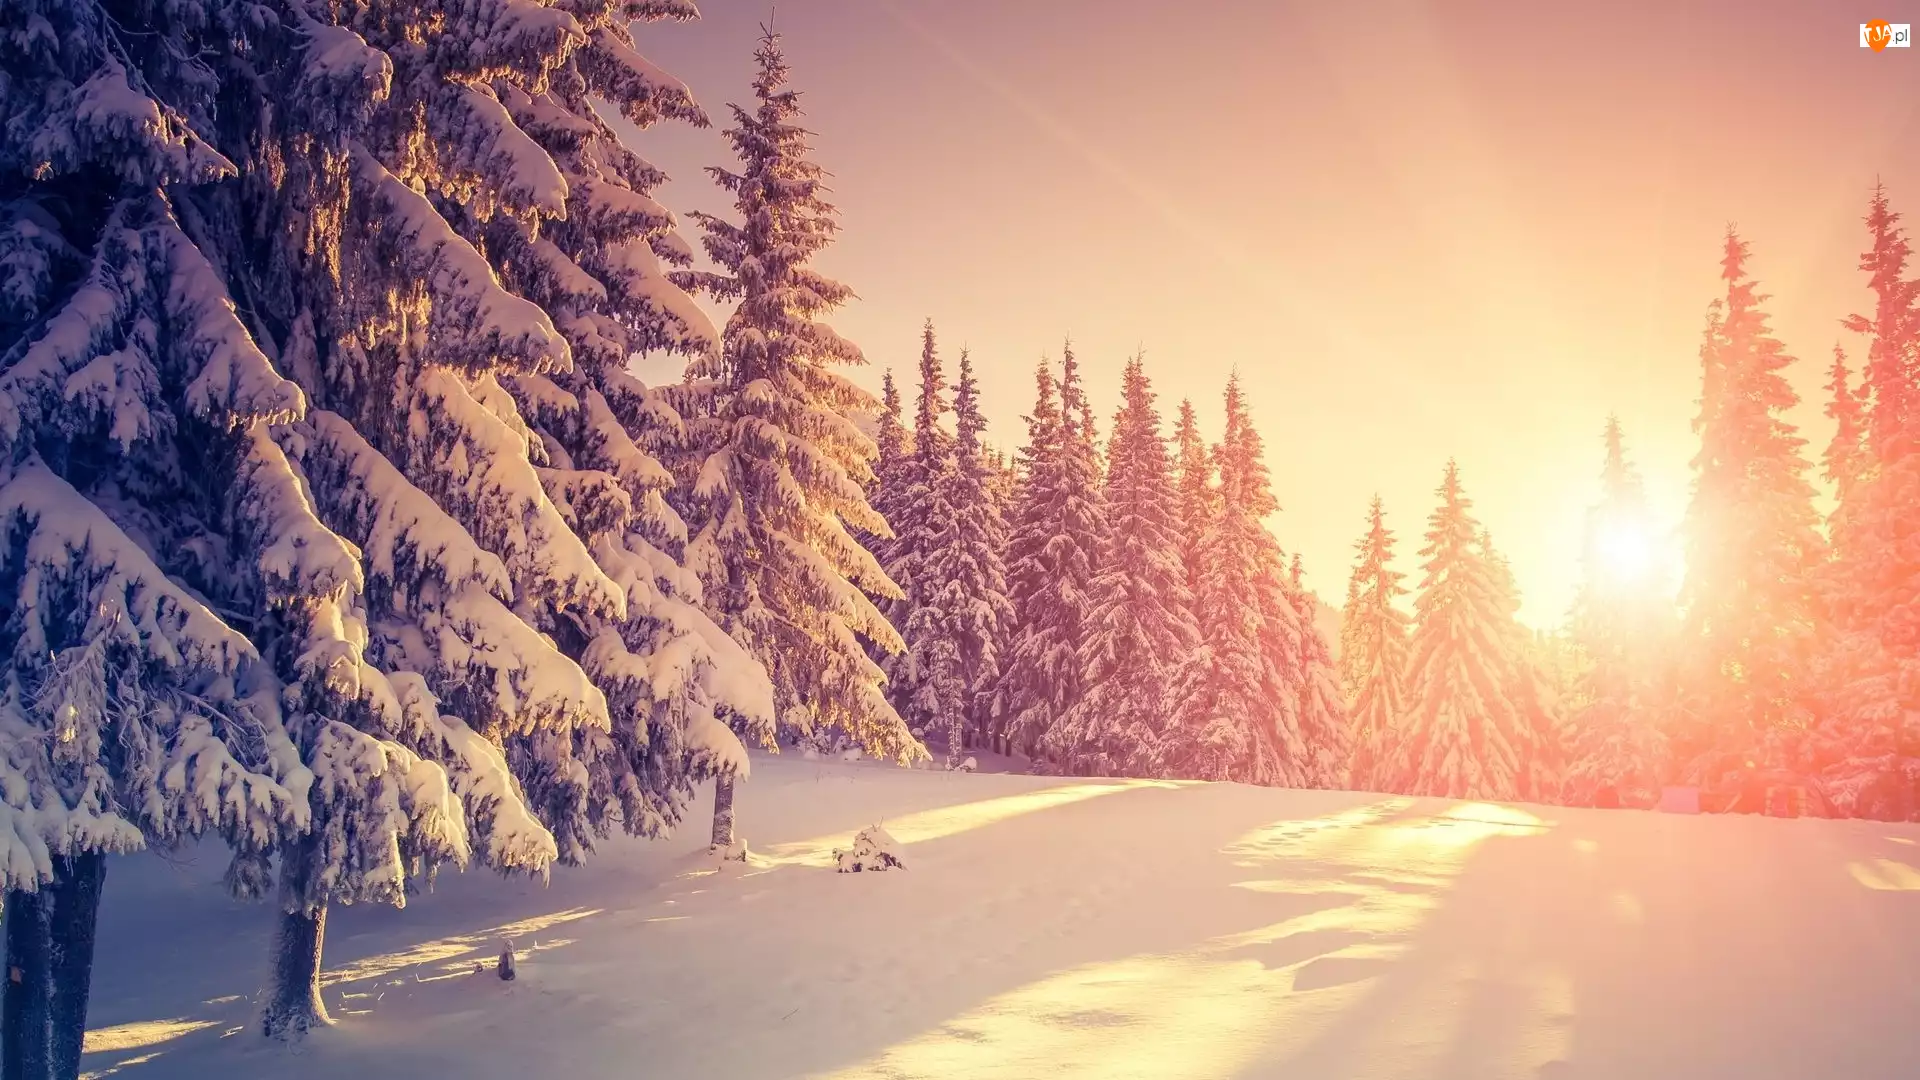 Drzewa, Śnieg, Ośnieżone, Wschód słońca, Zima